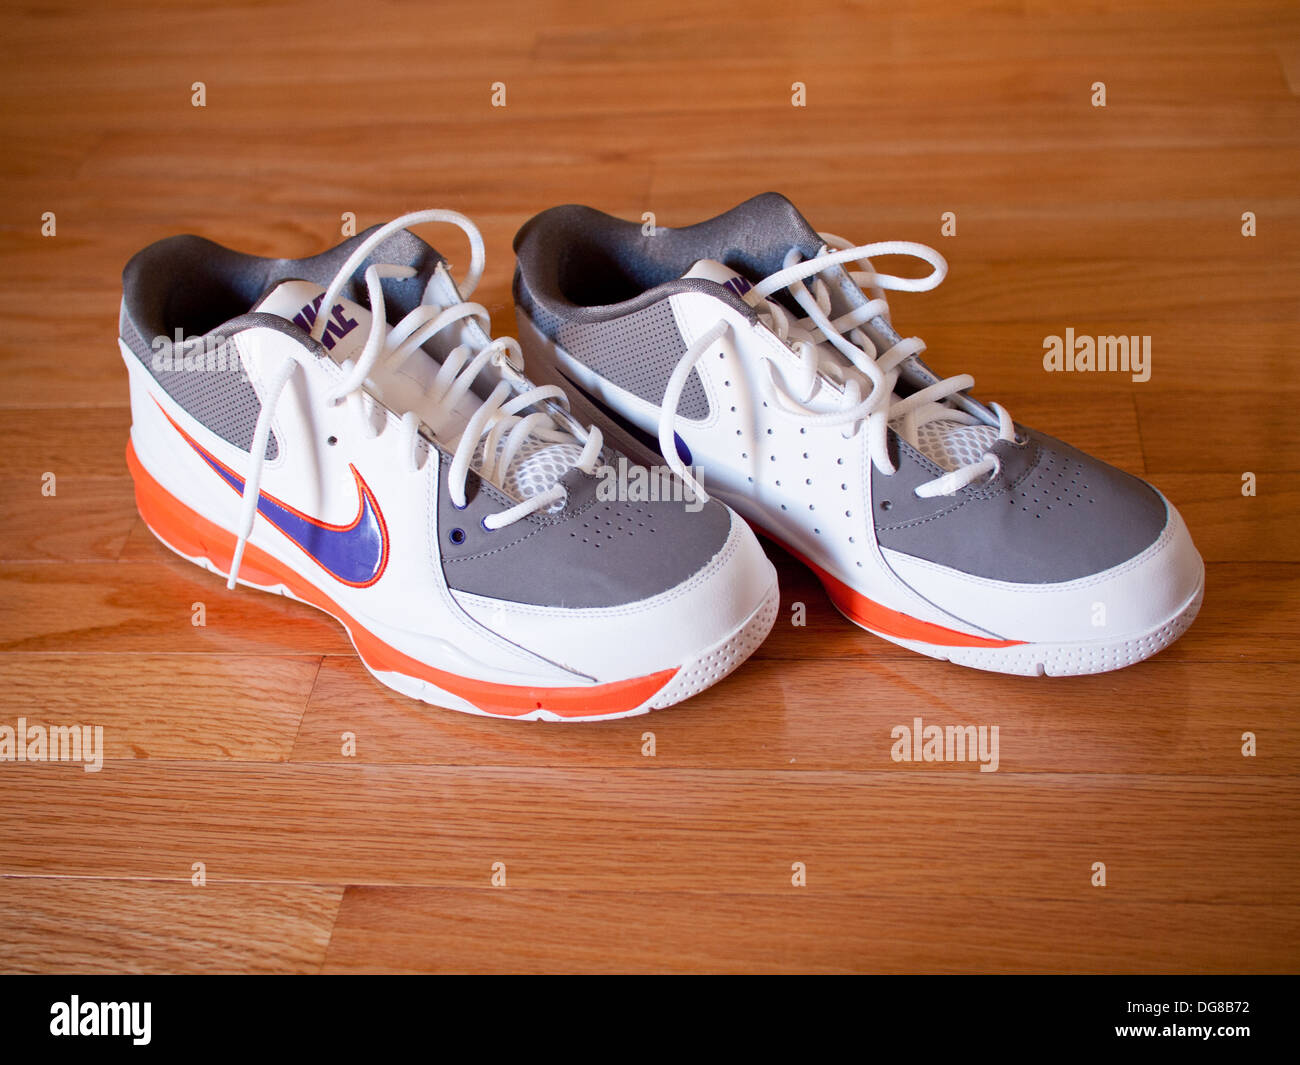 Une paire de chaussures Nike Zoom Go Low Steve Nash pour homme Chaussures. Banque D'Images